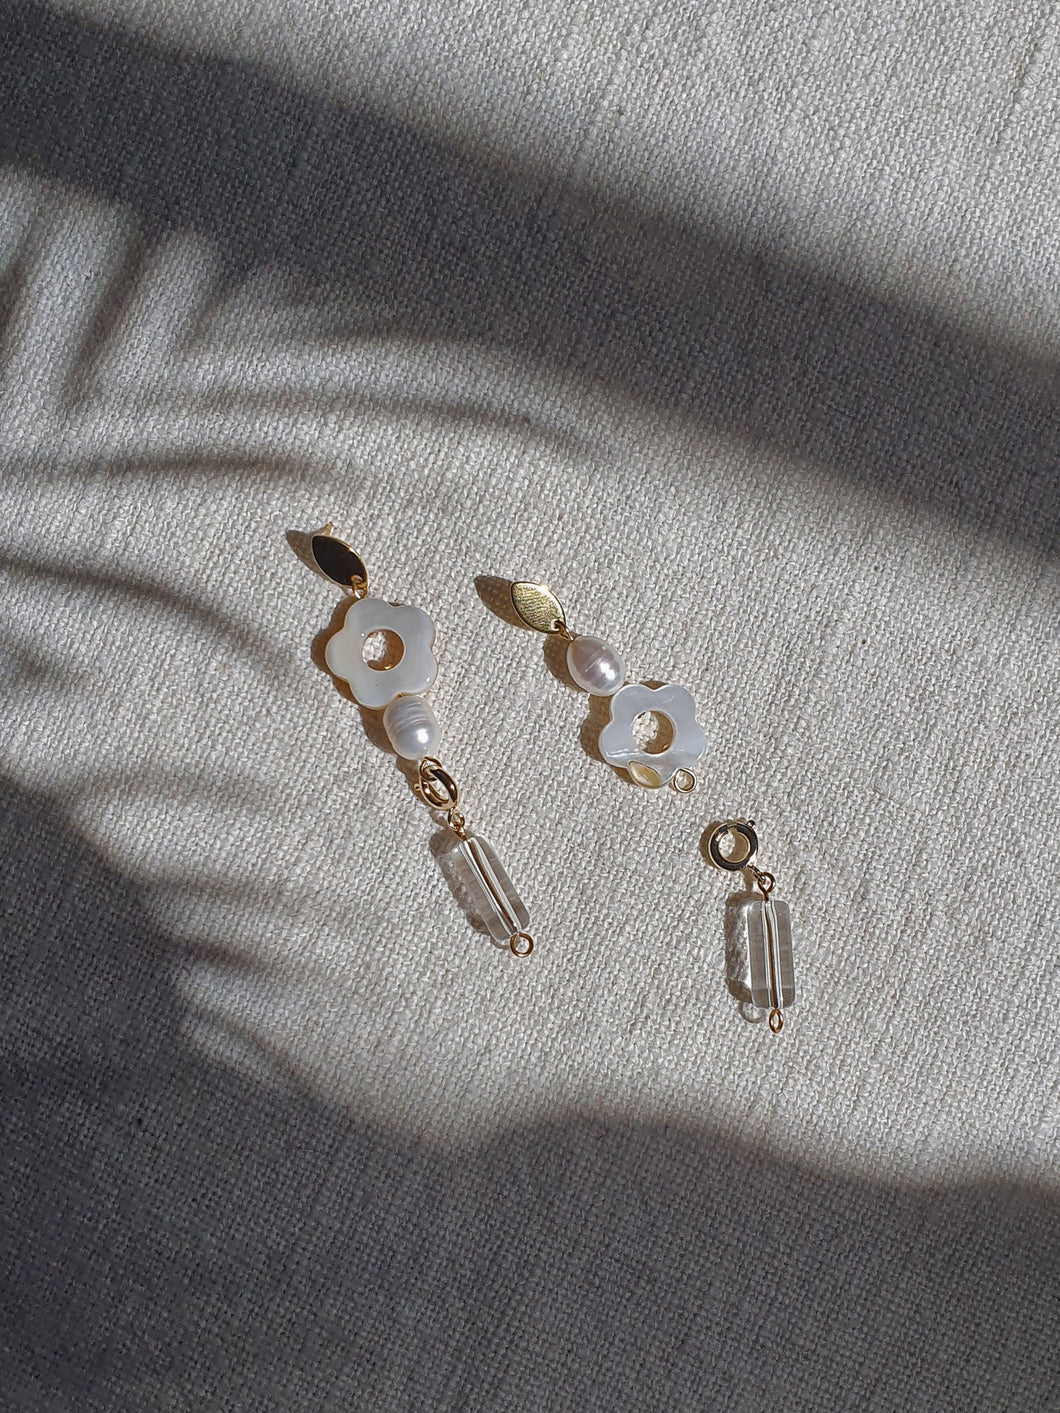 wholesale HAELA earrings - Pearl White